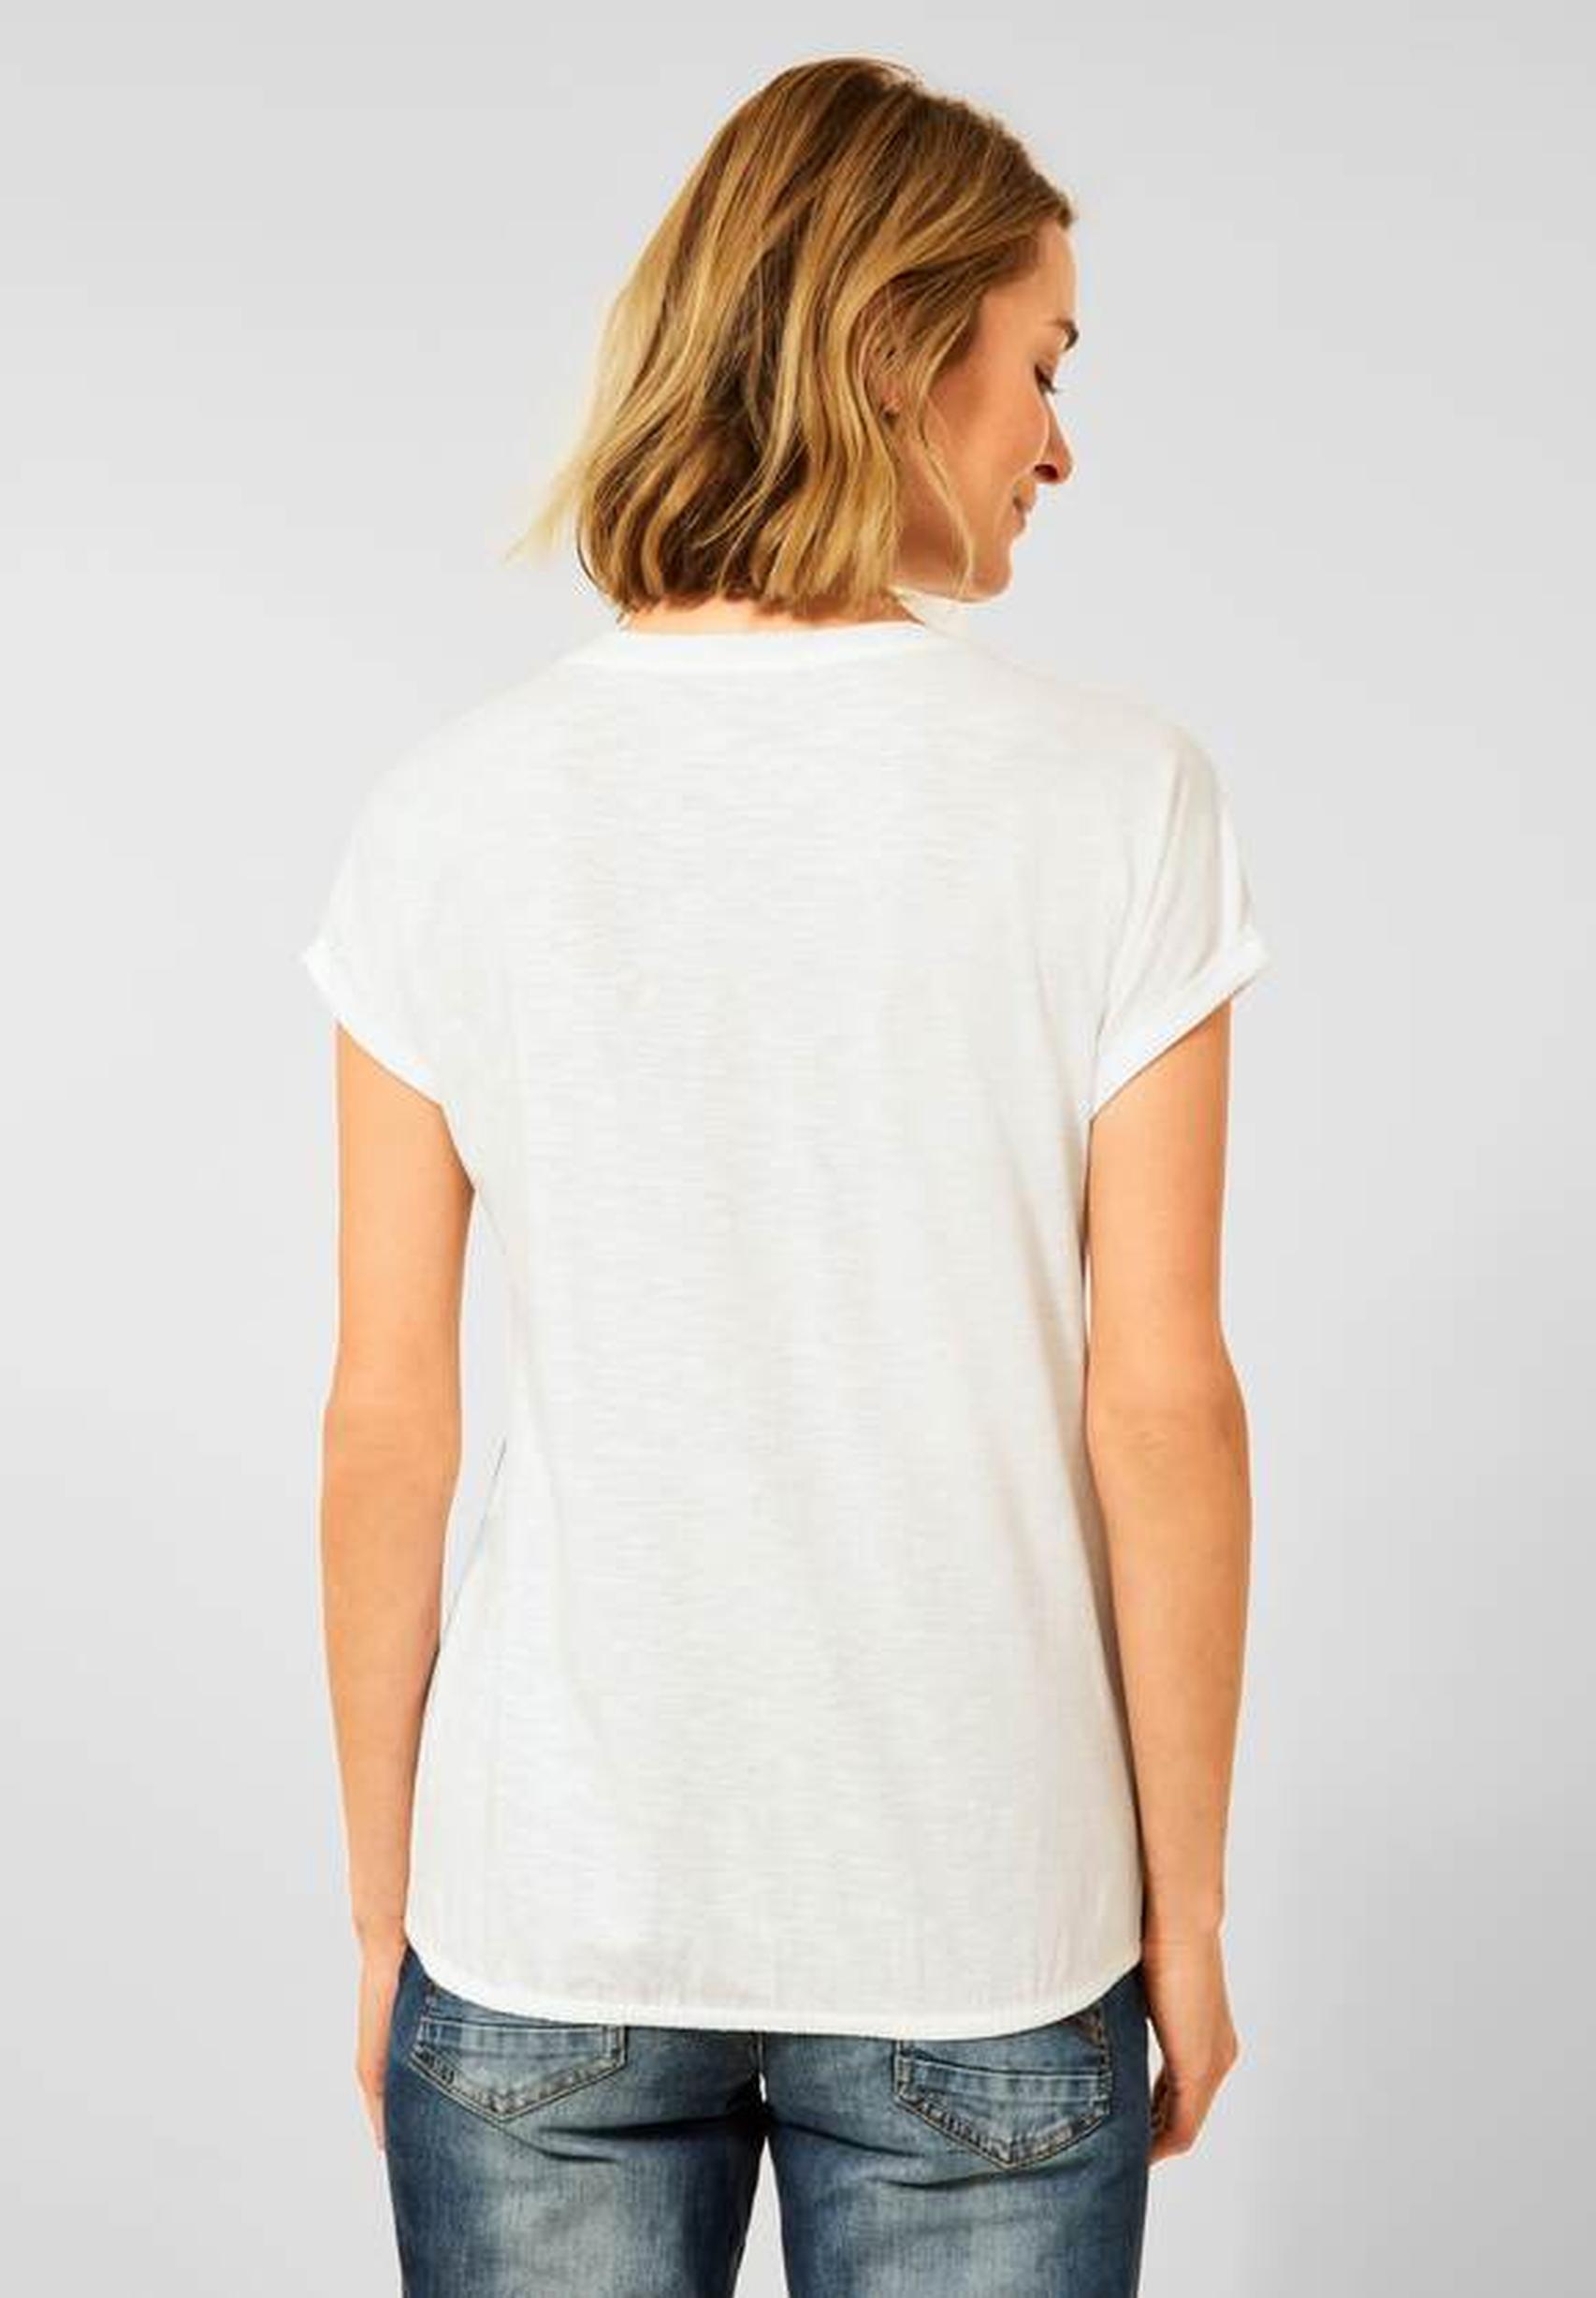 Modernes T-Shirt aus der Kollektion von CECIL in vanilla white - 318470